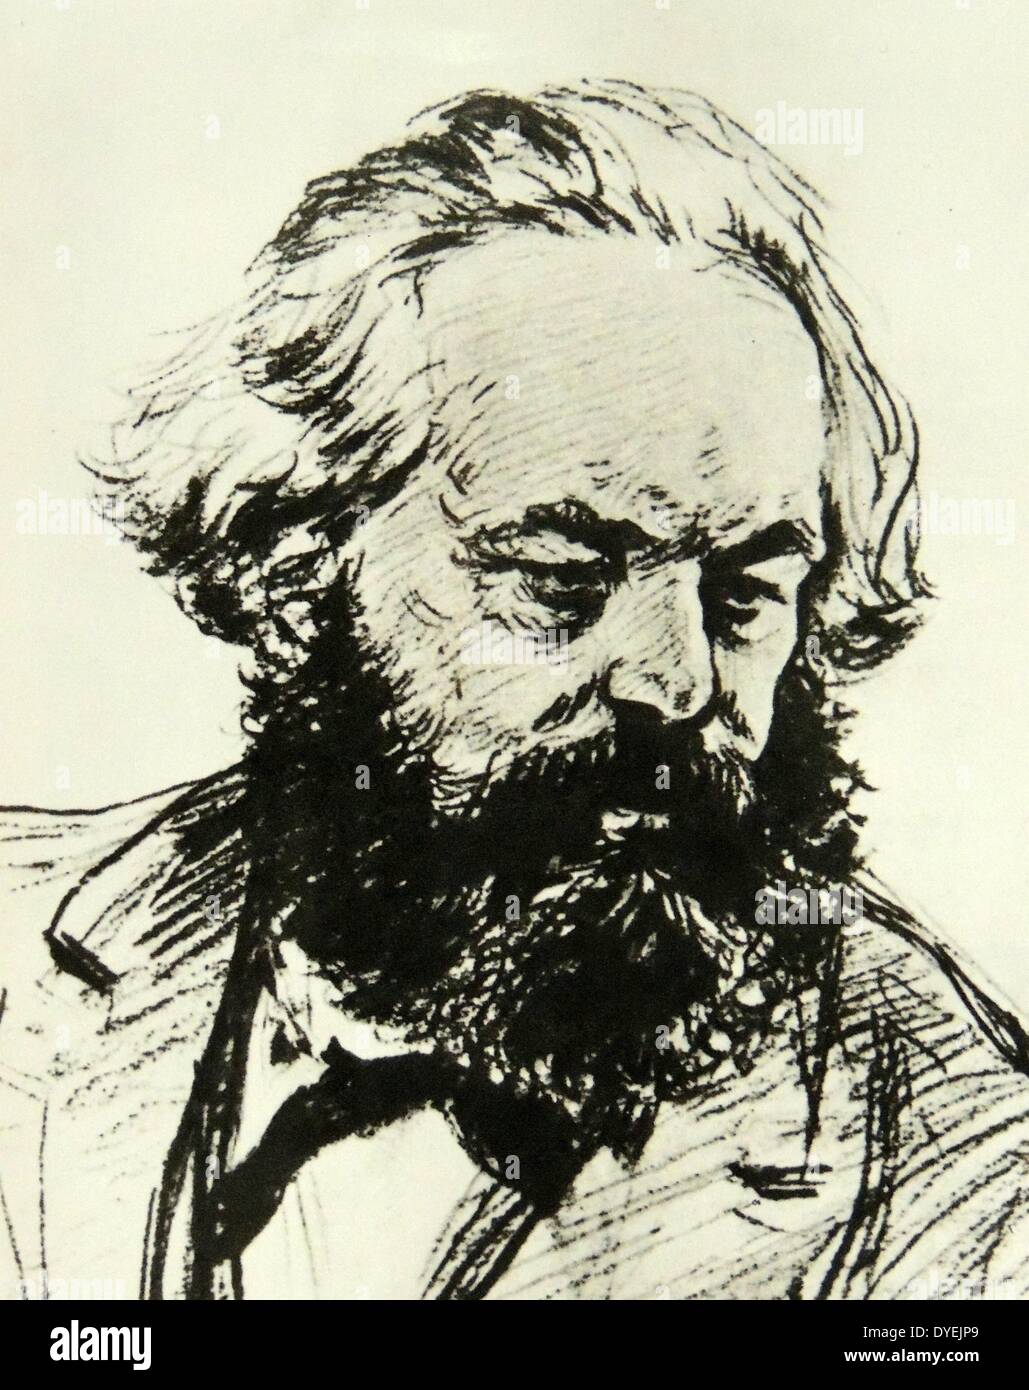 Karl Marx (5 mai 1818 - 14 mars 1883) était un philosophe, économiste, sociologue, historien, journaliste et socialiste révolutionnaire. Banque D'Images